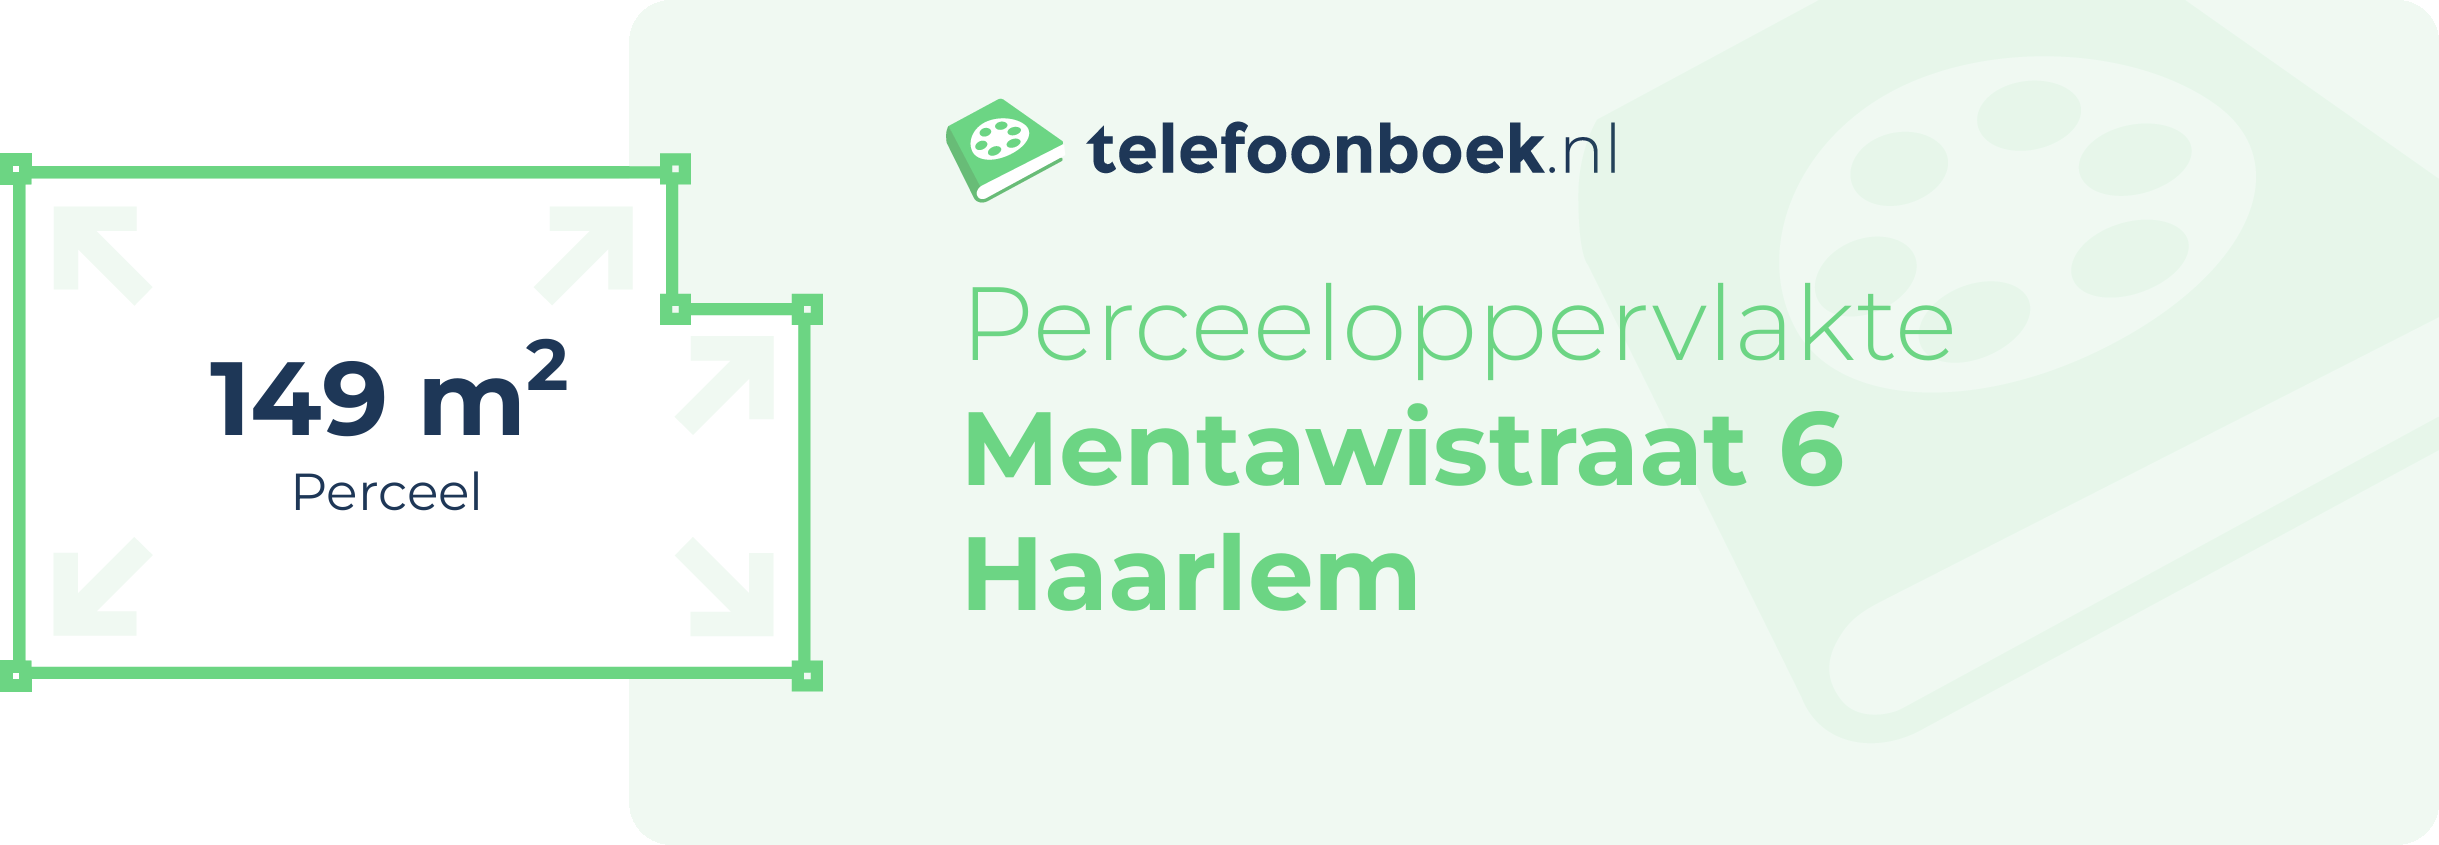 Perceeloppervlakte Mentawistraat 6 Haarlem